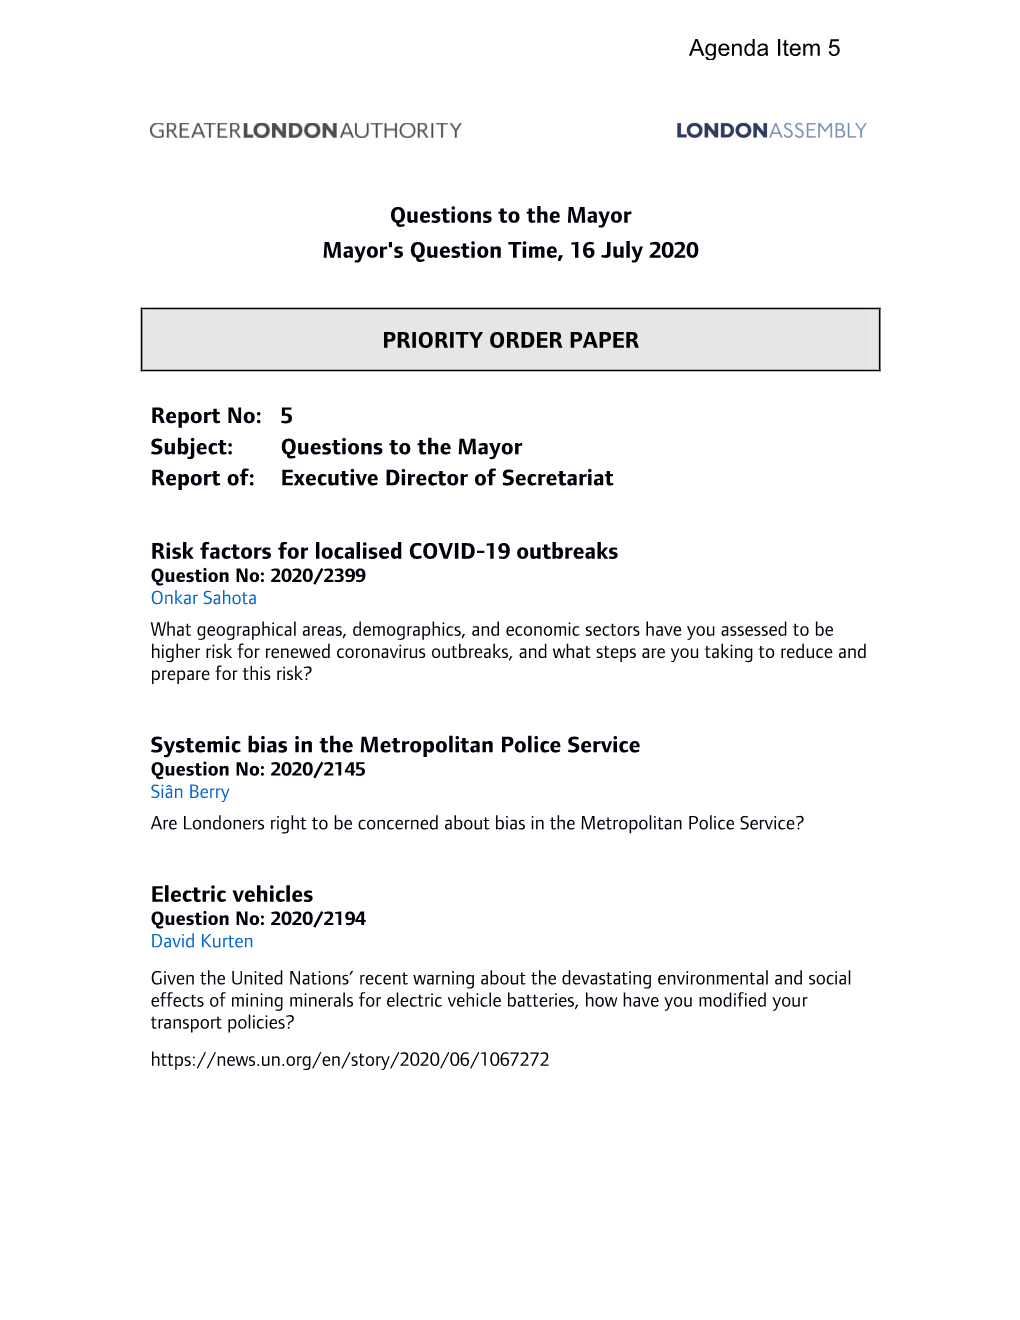 Priority Order Paper PDF 500 KB